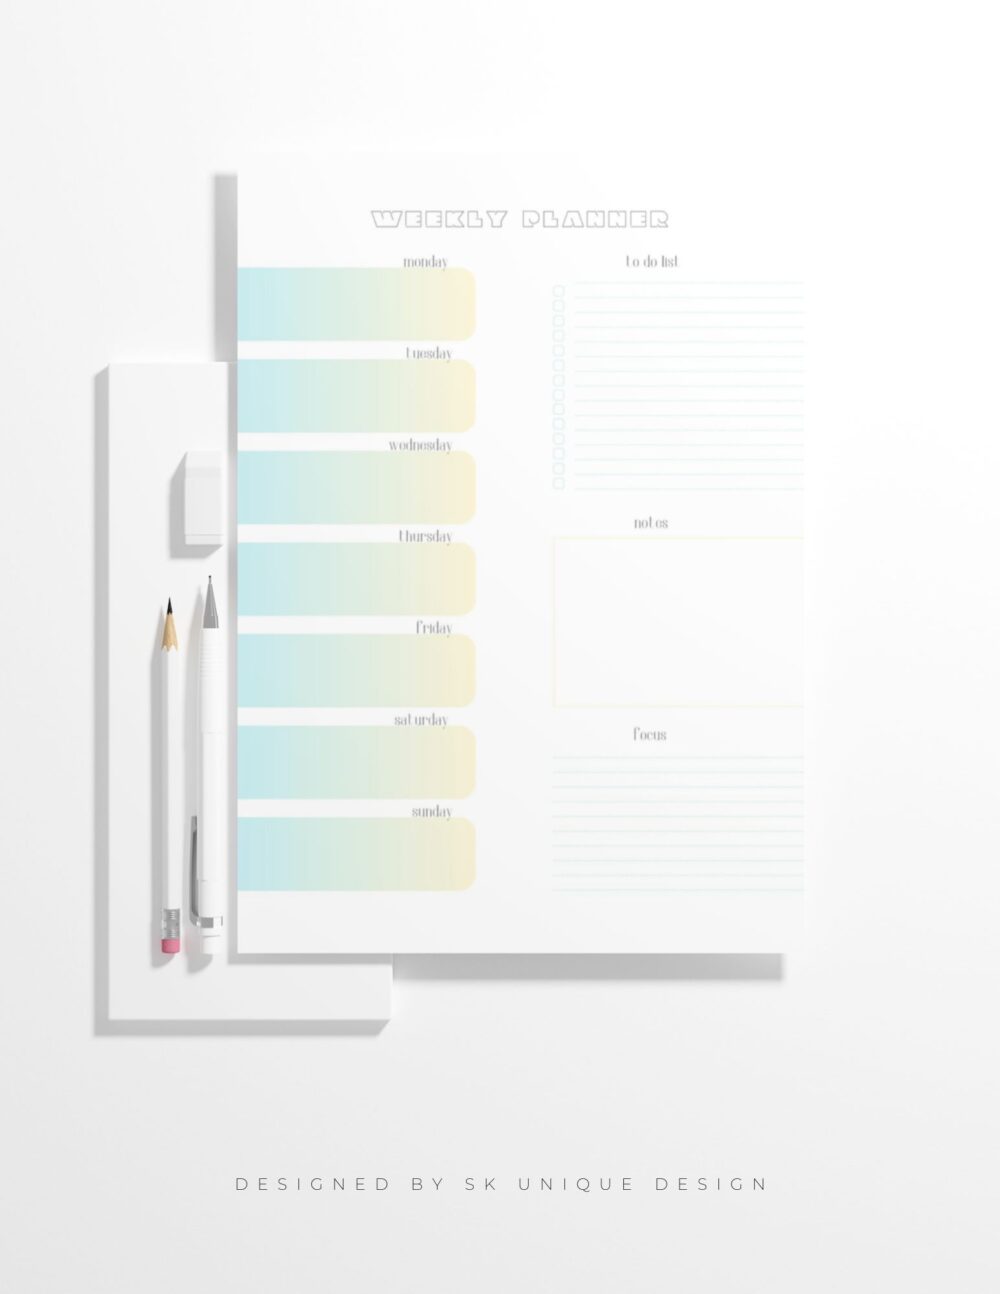 Wochenplaner - Kalendar - SK Unique Design